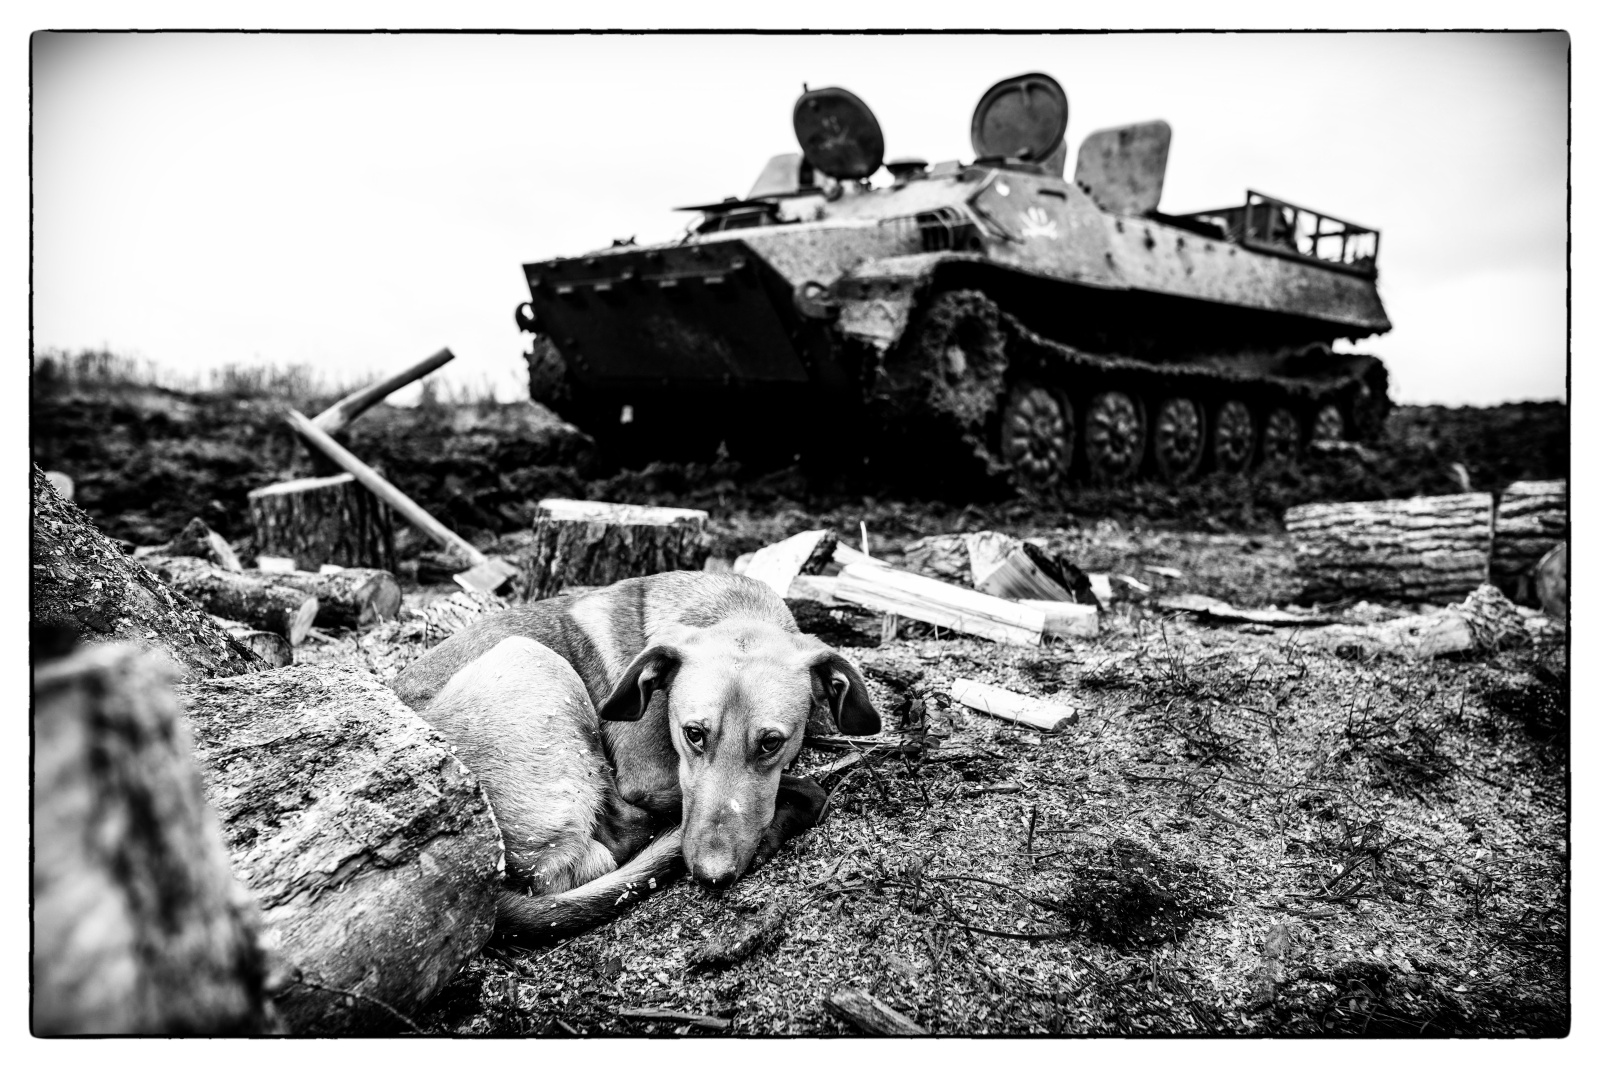 Donbass, Ukraine (2016). The forgotten war